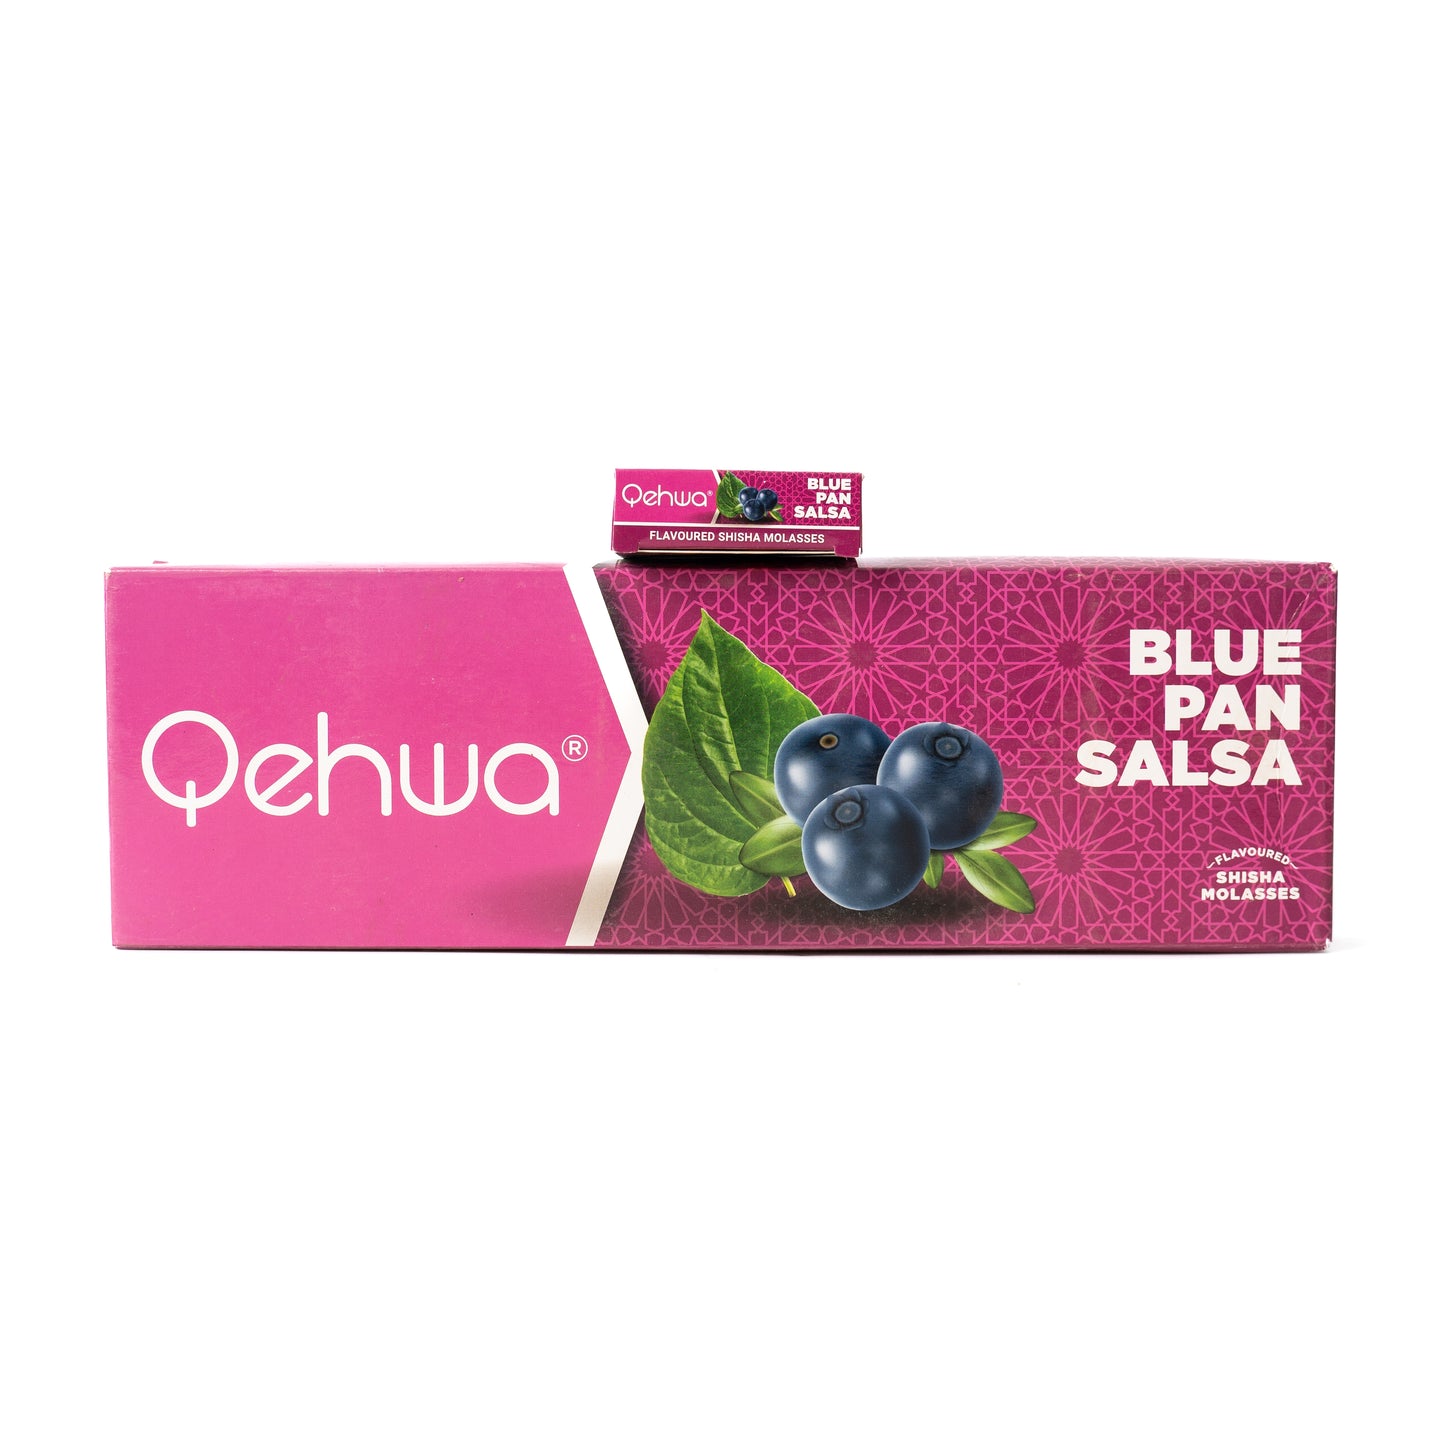 Blue Pan Salsa Hookah Flavor by Qehwa